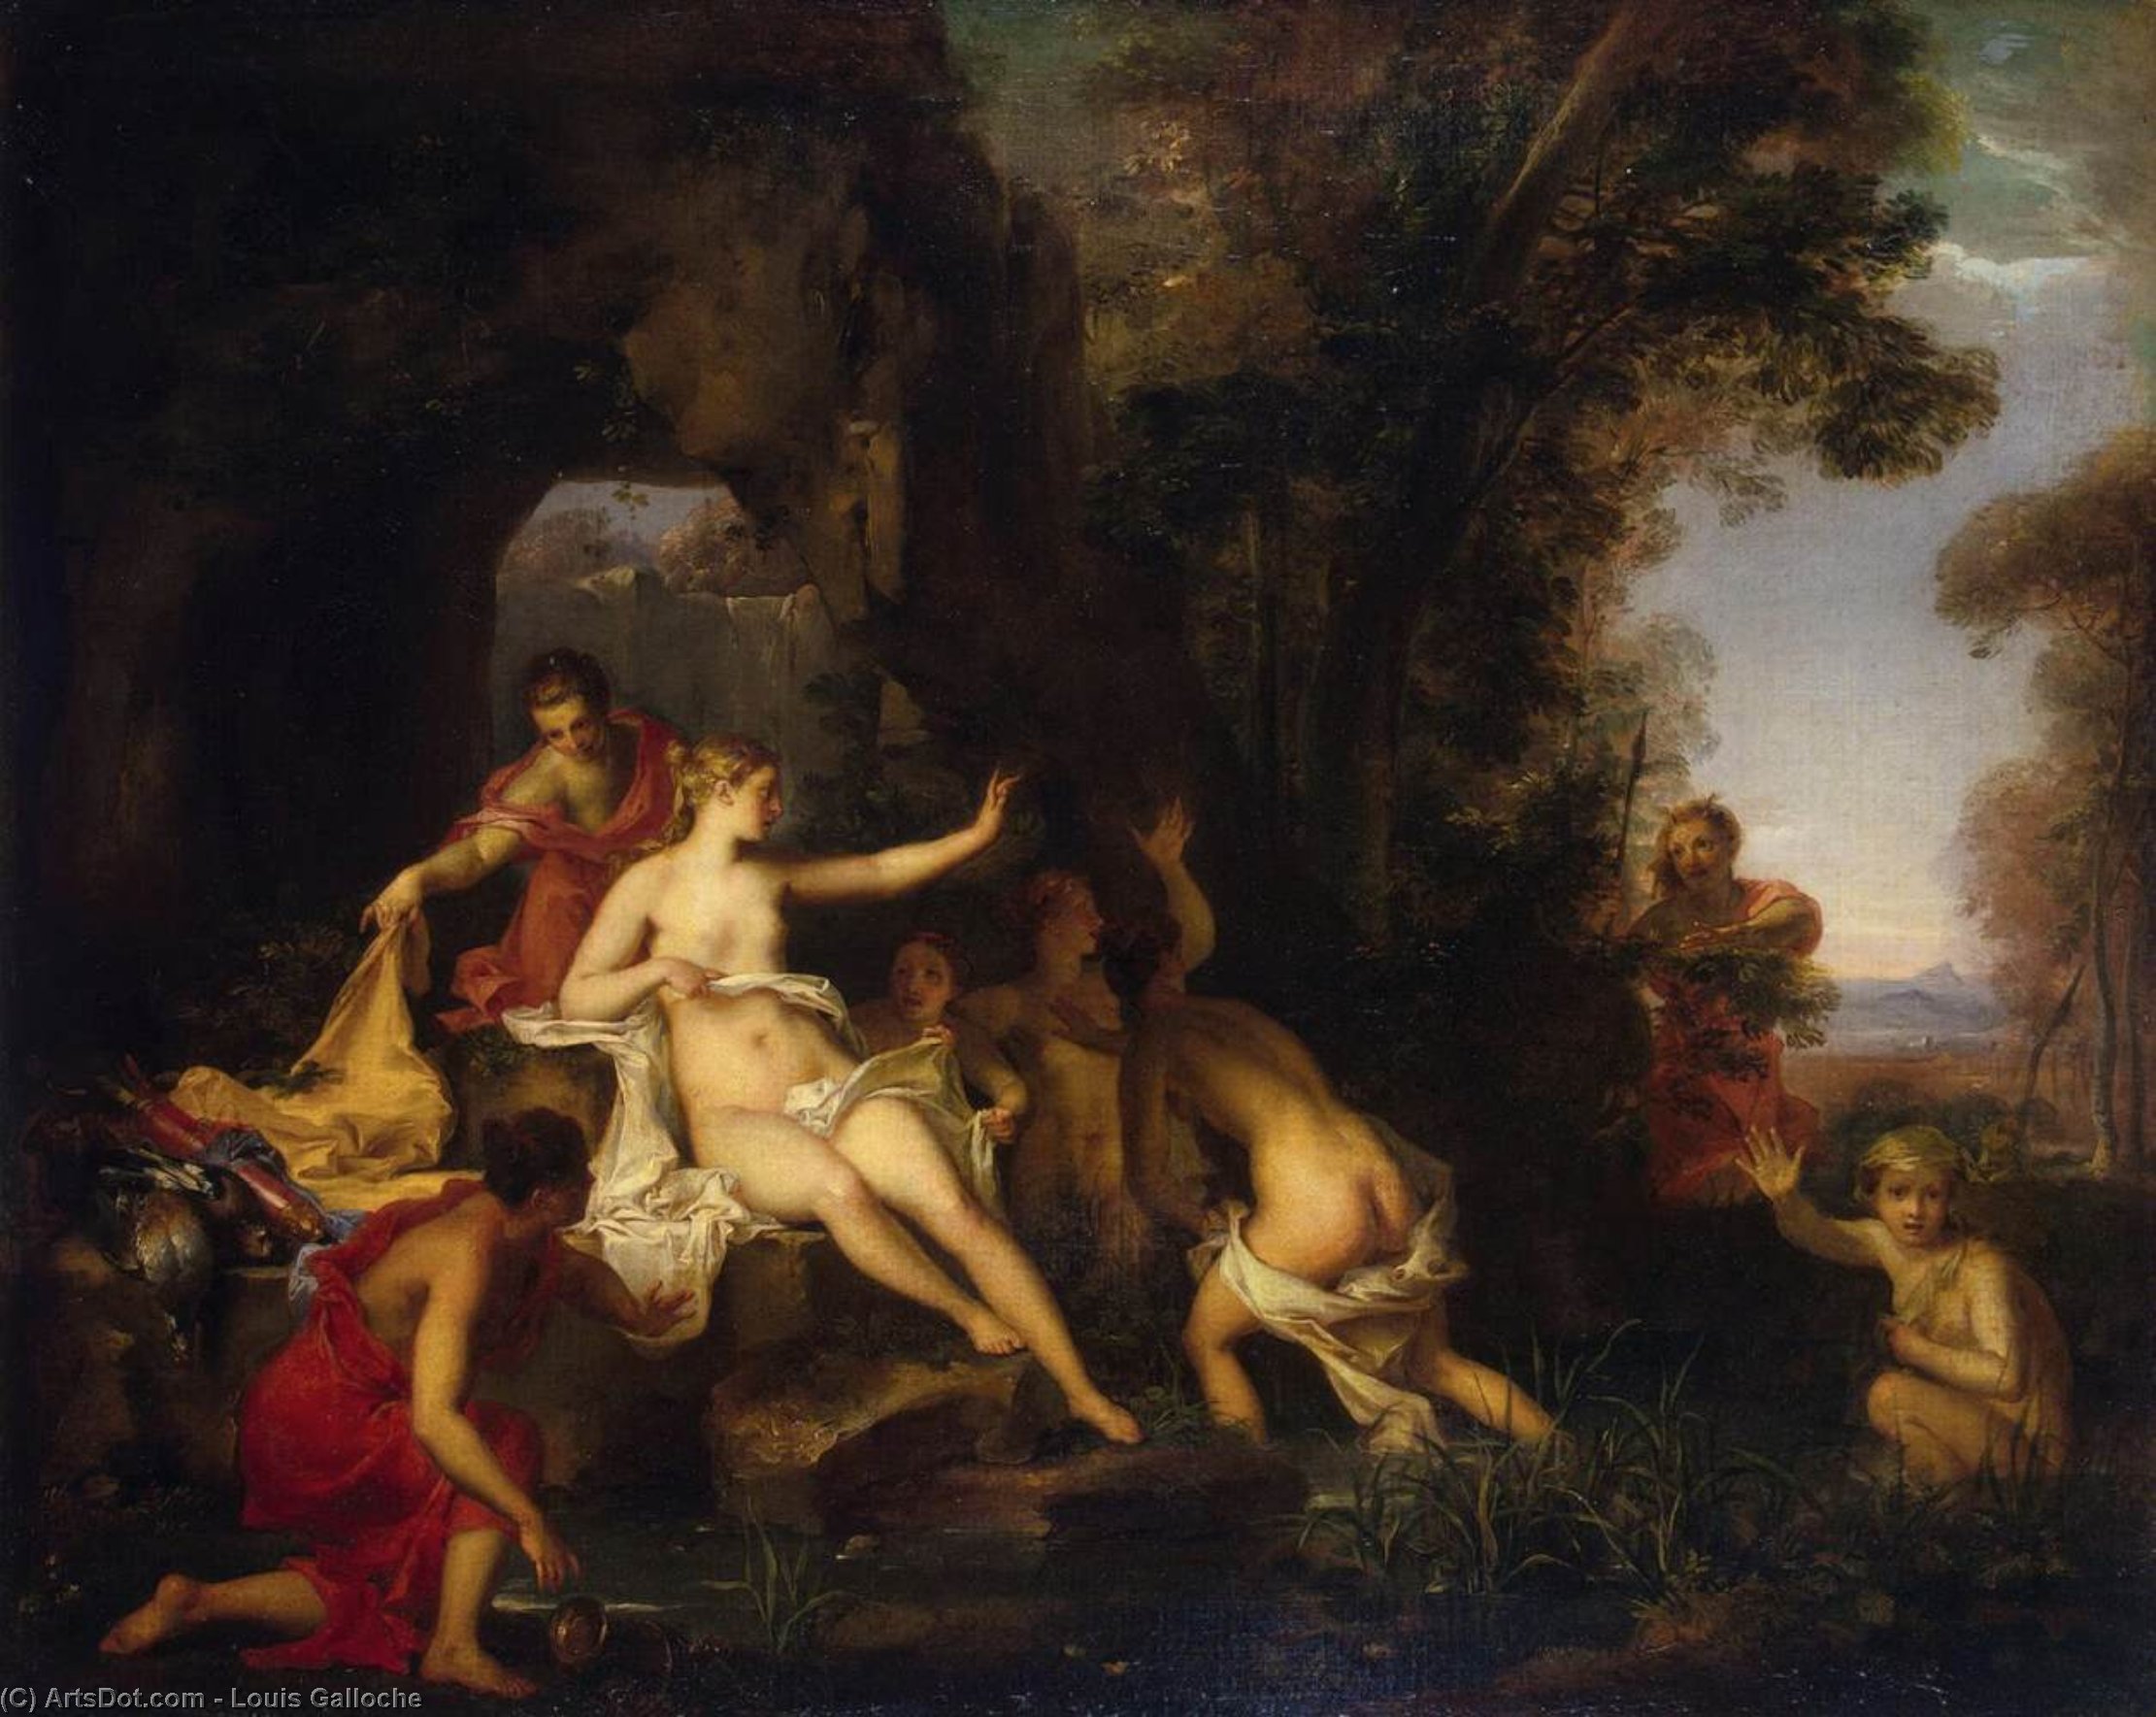 Картины эрмитажа. «Диана и Актеон» (1556—1559). Артемида и Актеон картины. Тициан Диана и Актеон. • «Диана и Актеон» (1556—1559),Тициан.